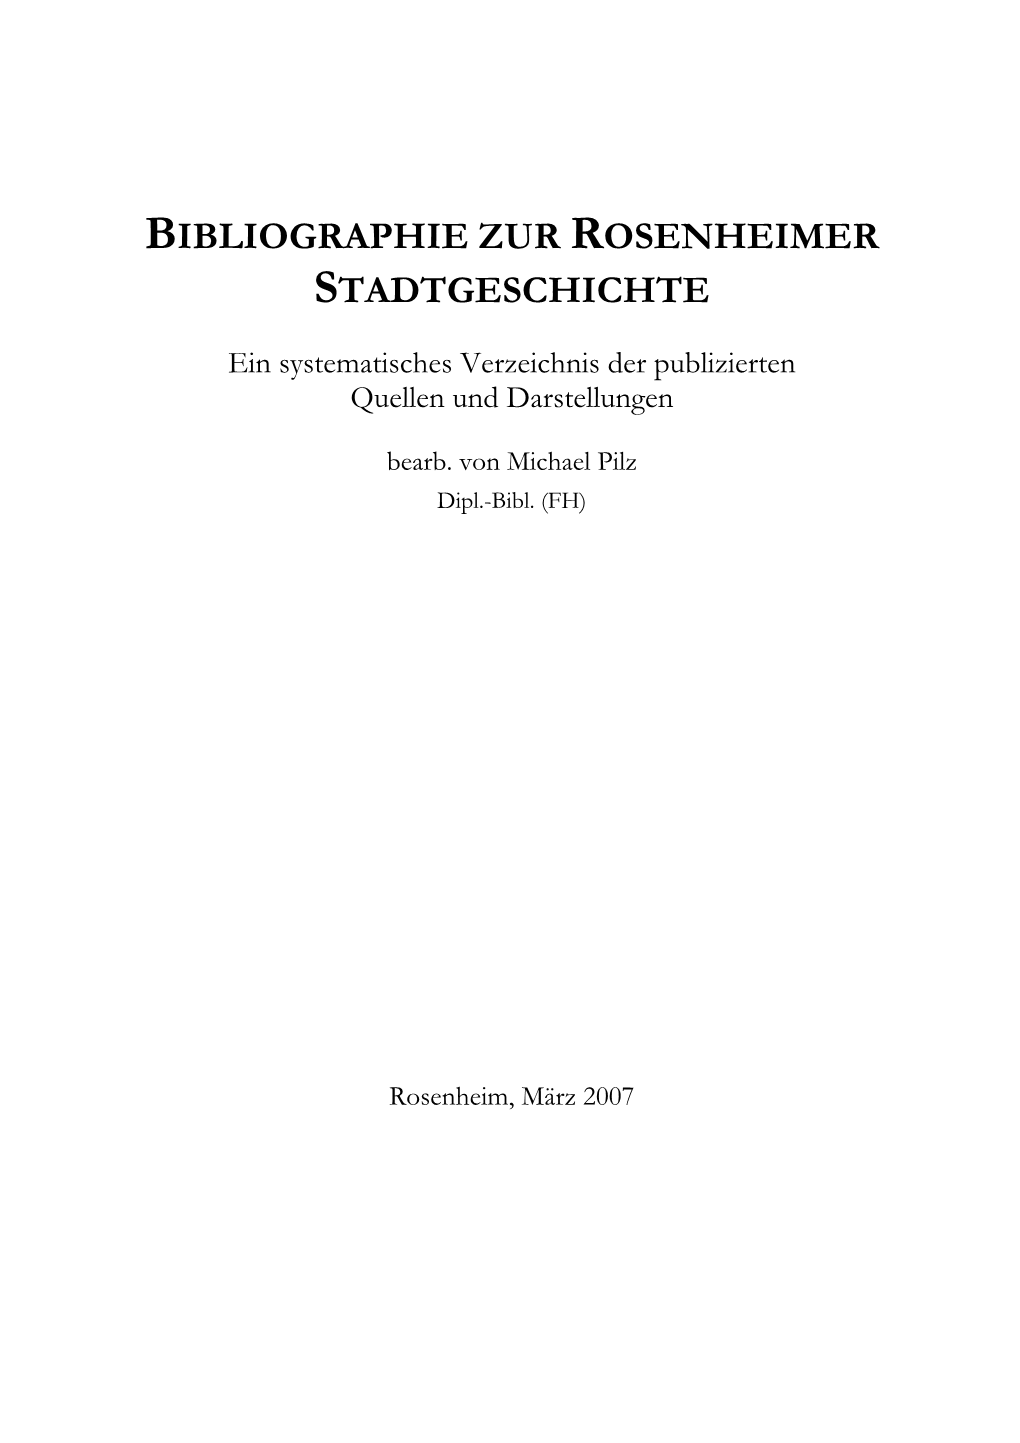 Bibliographie Zur Rosenheimer Stadtgeschichte